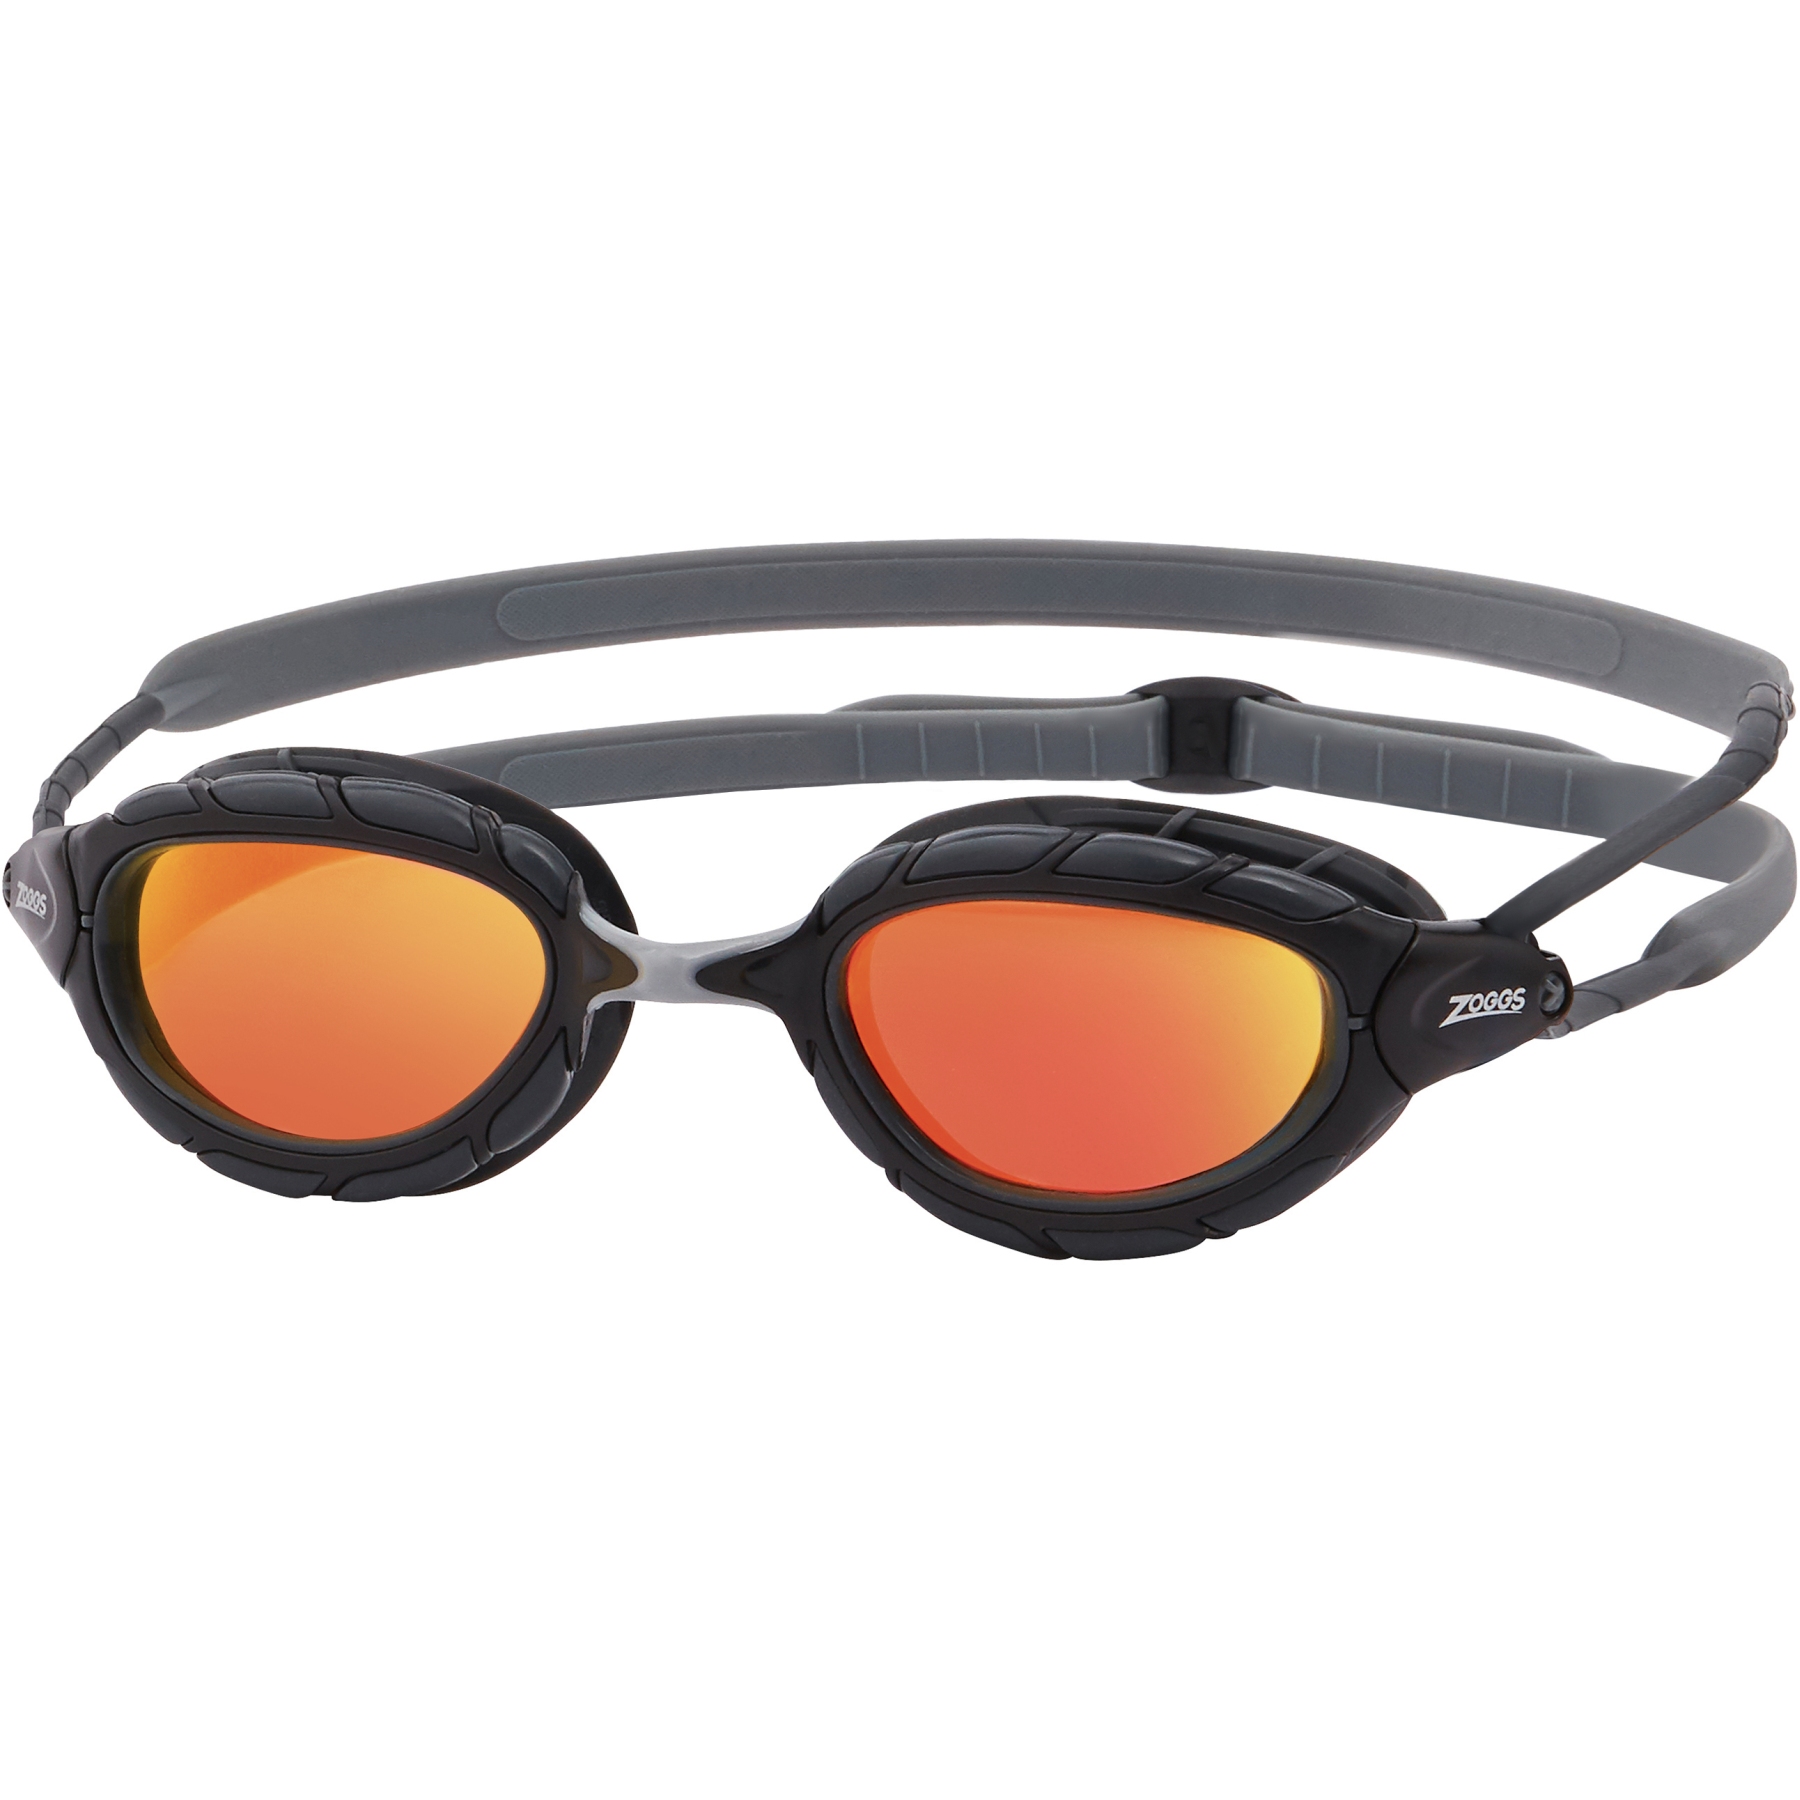 Productfoto van Zoggs Predator Titanium Zwembril - Mirror Orange Lenses - Regular Fit - Grey/Black